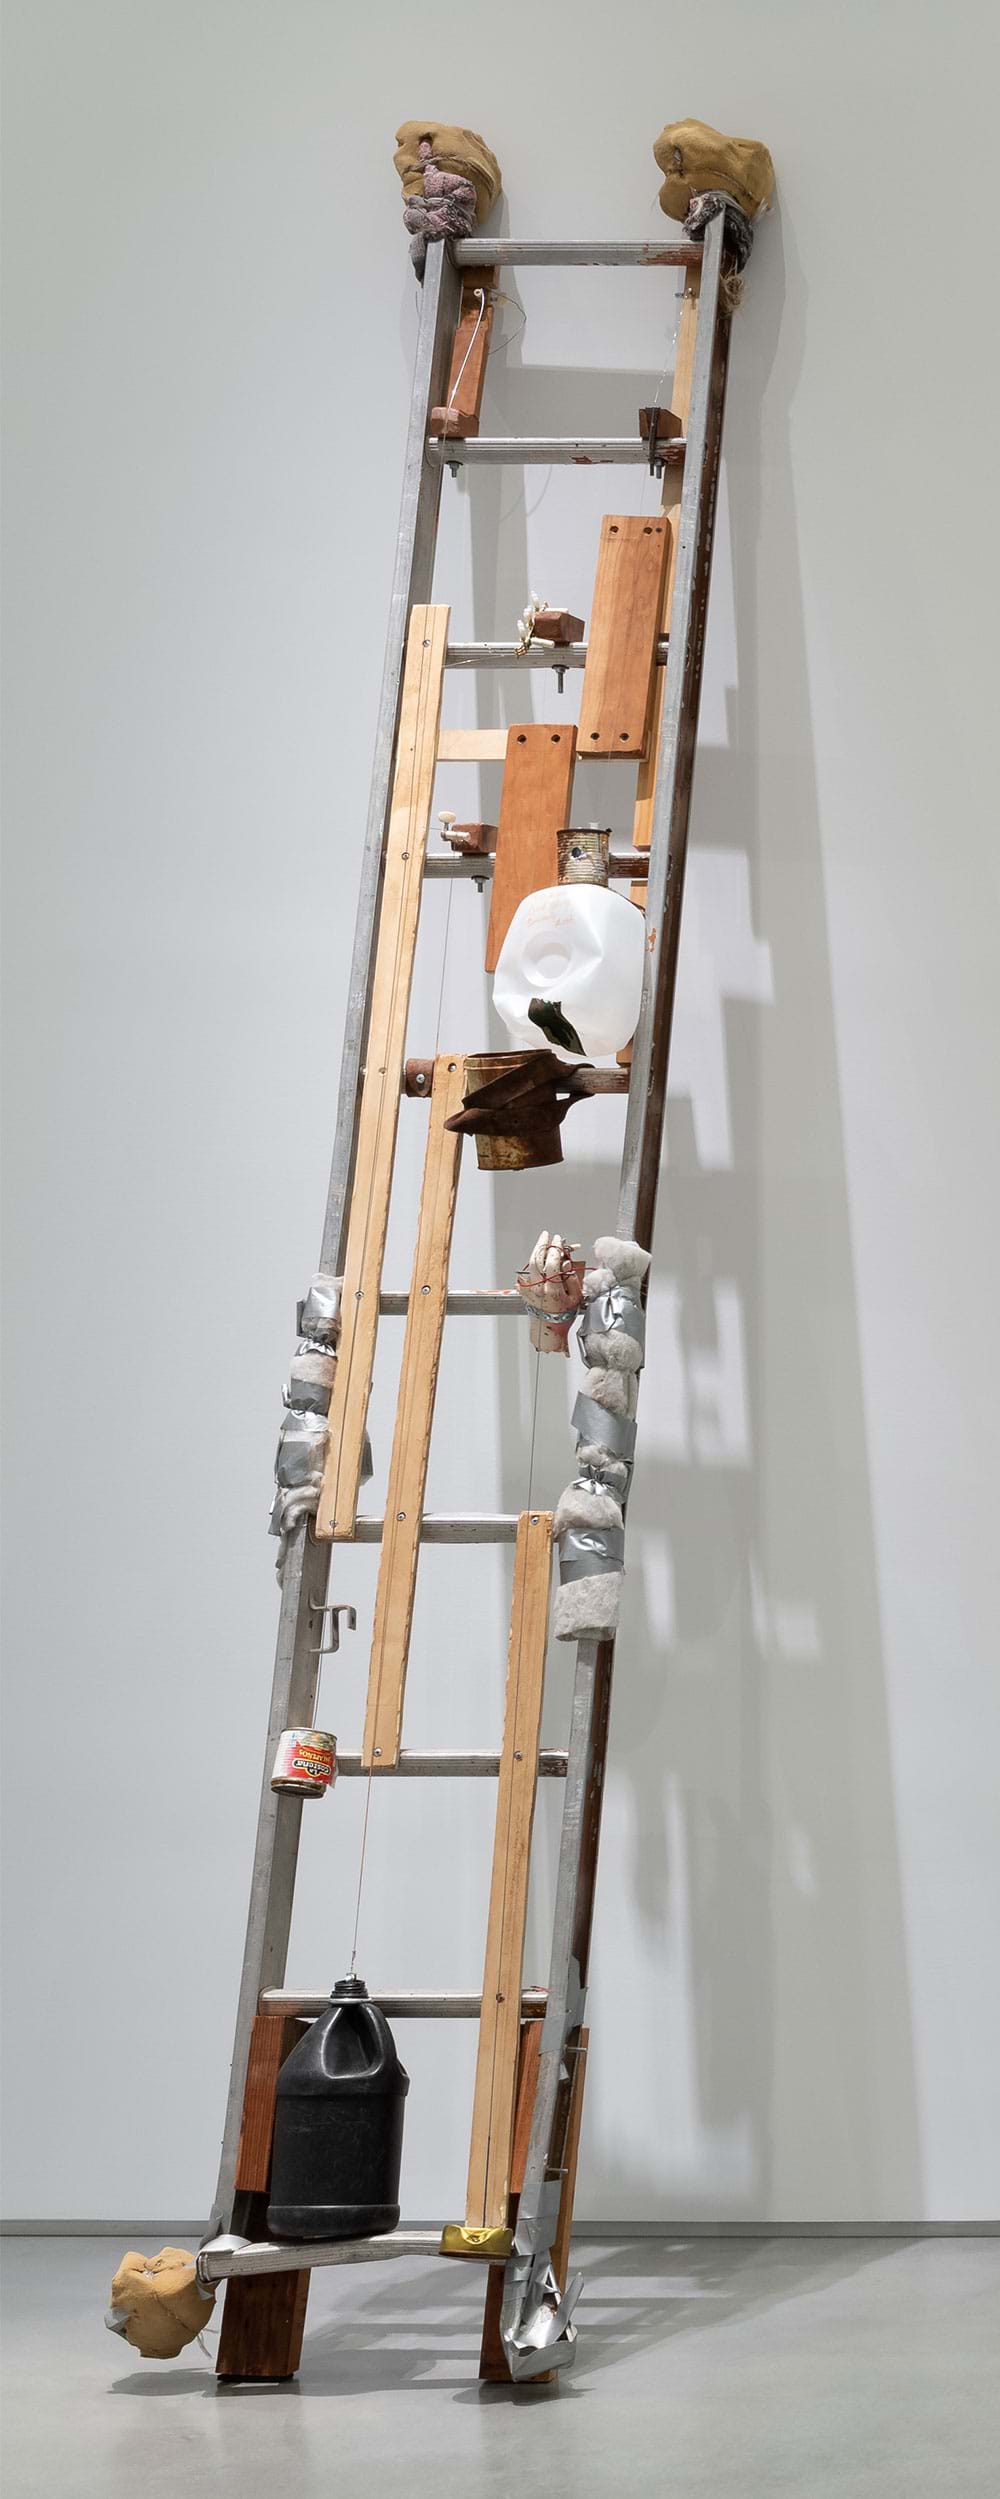 Sirvientes y Escaleras / Servants and Ladders, 2015